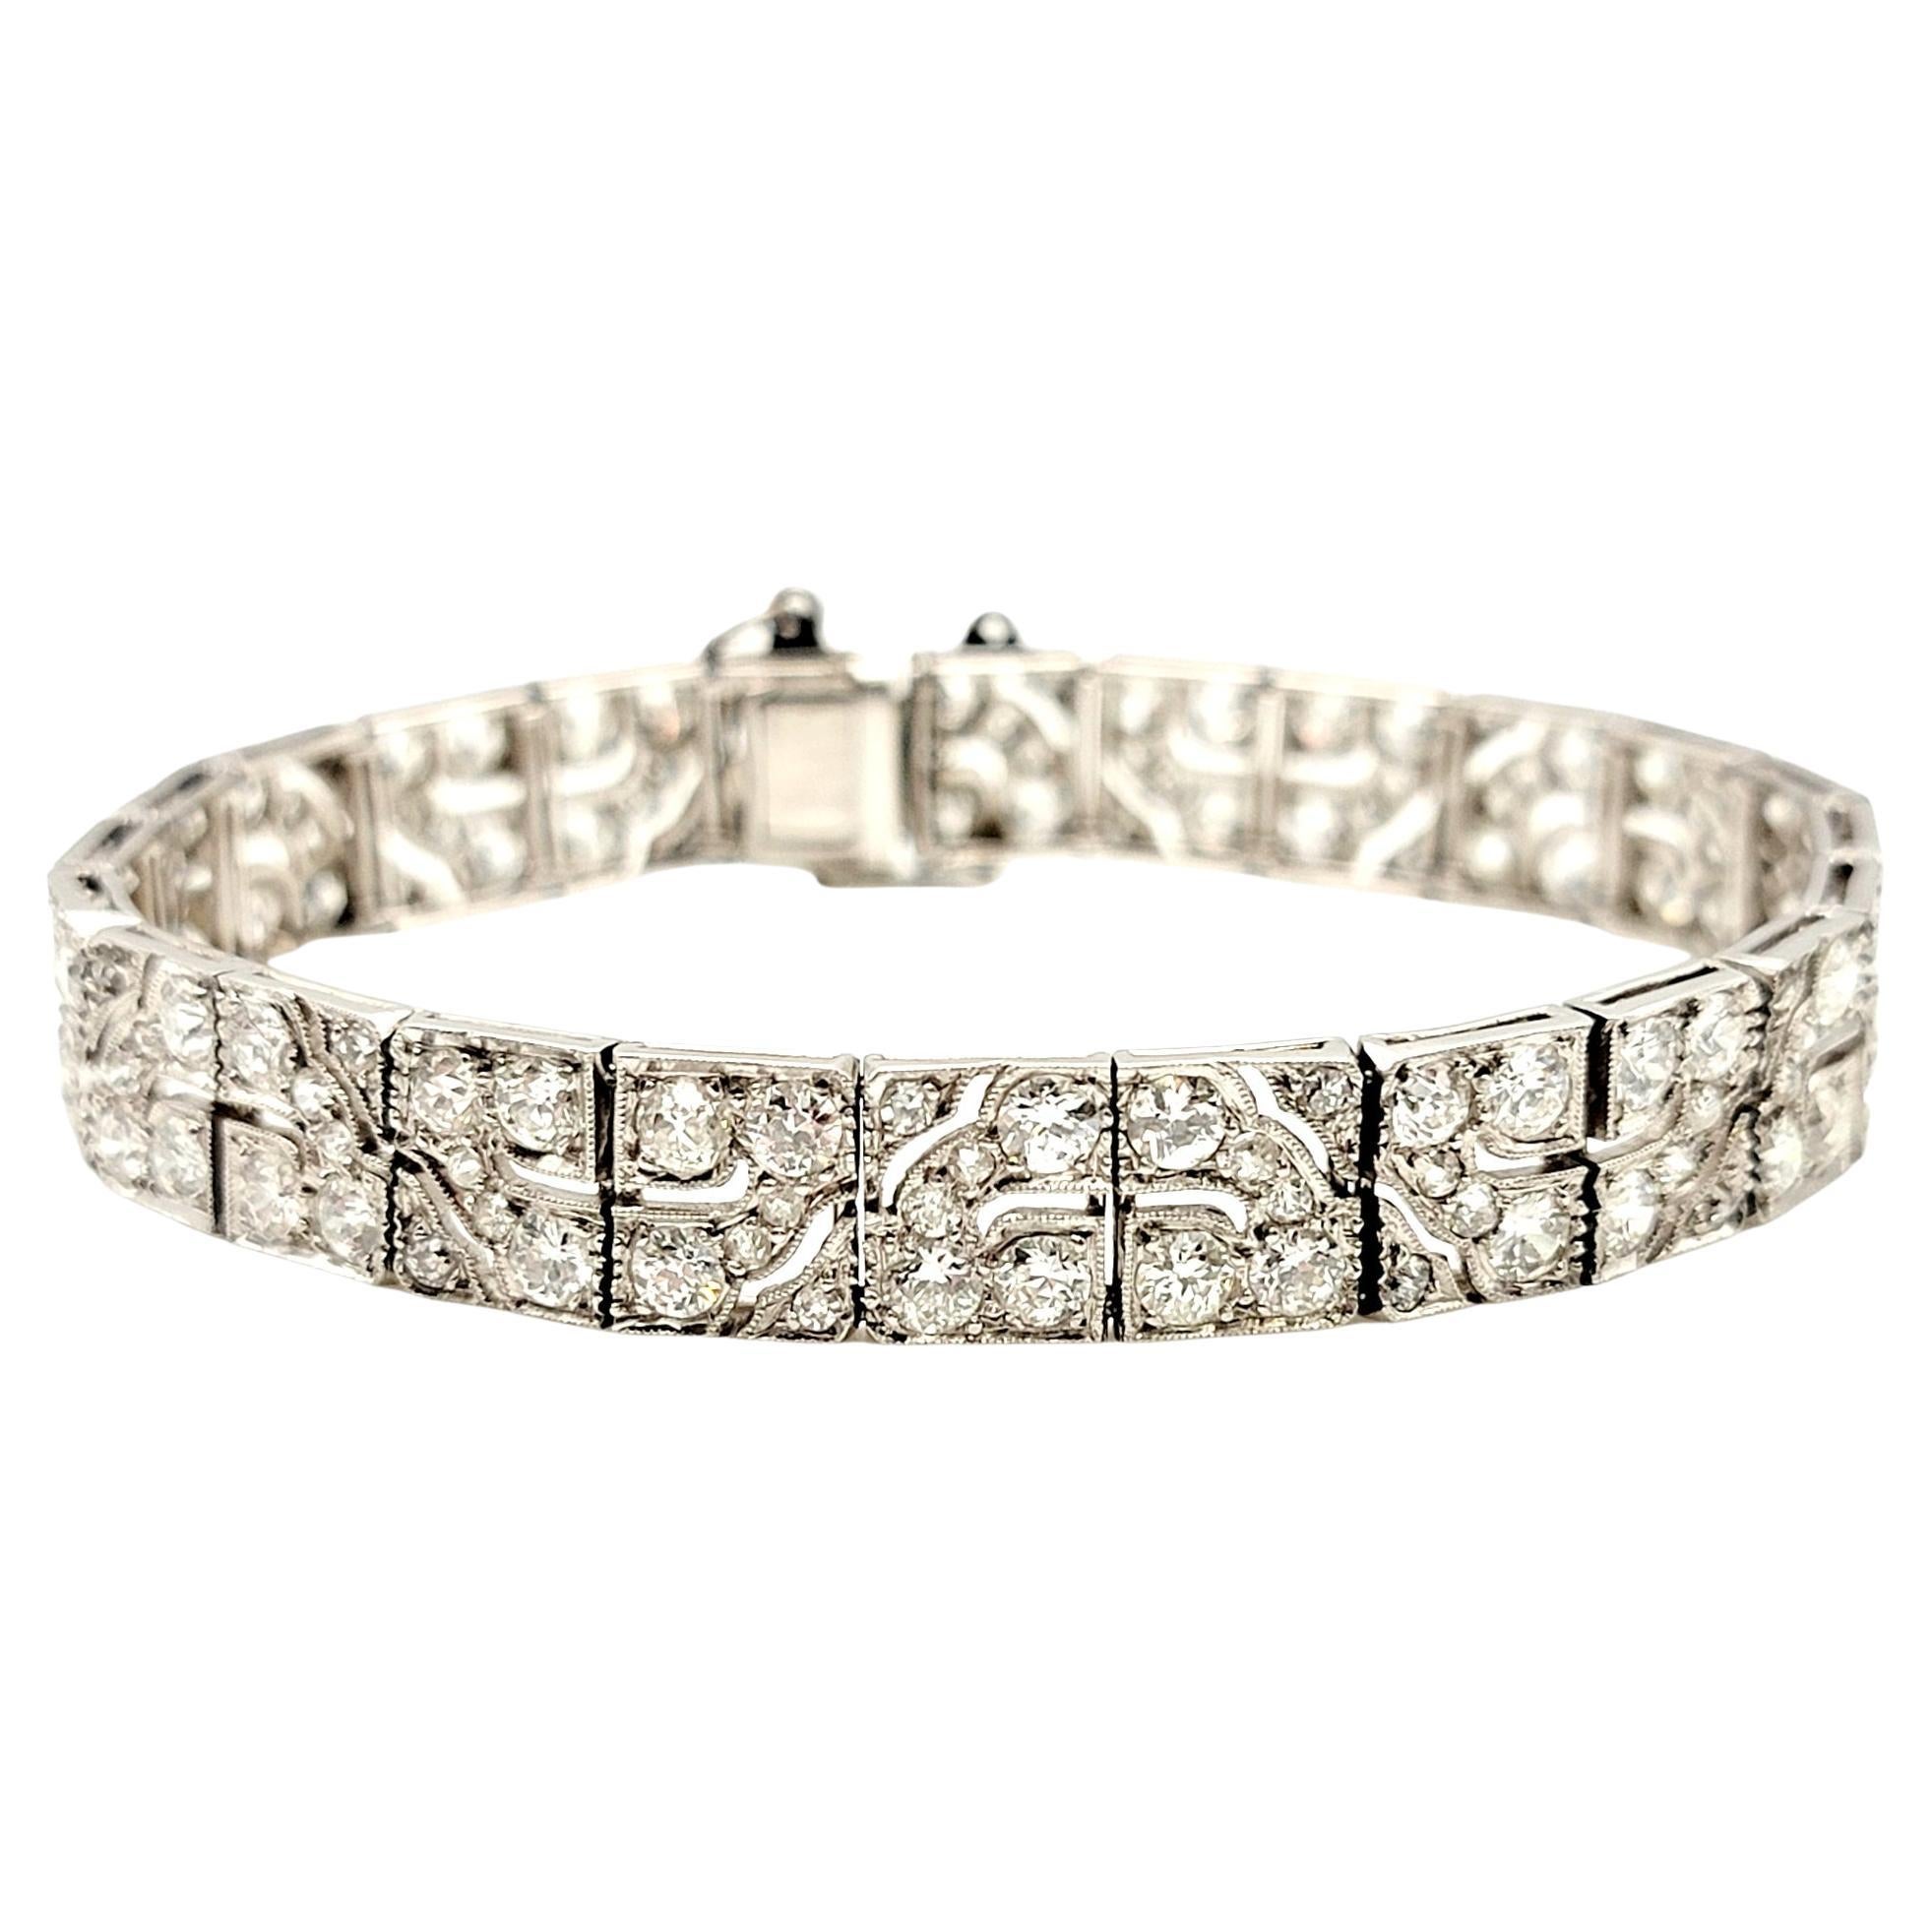 Art Deco Diamond Bracelet 8.40 Carats Old European Cut Diamonds Geometric Design